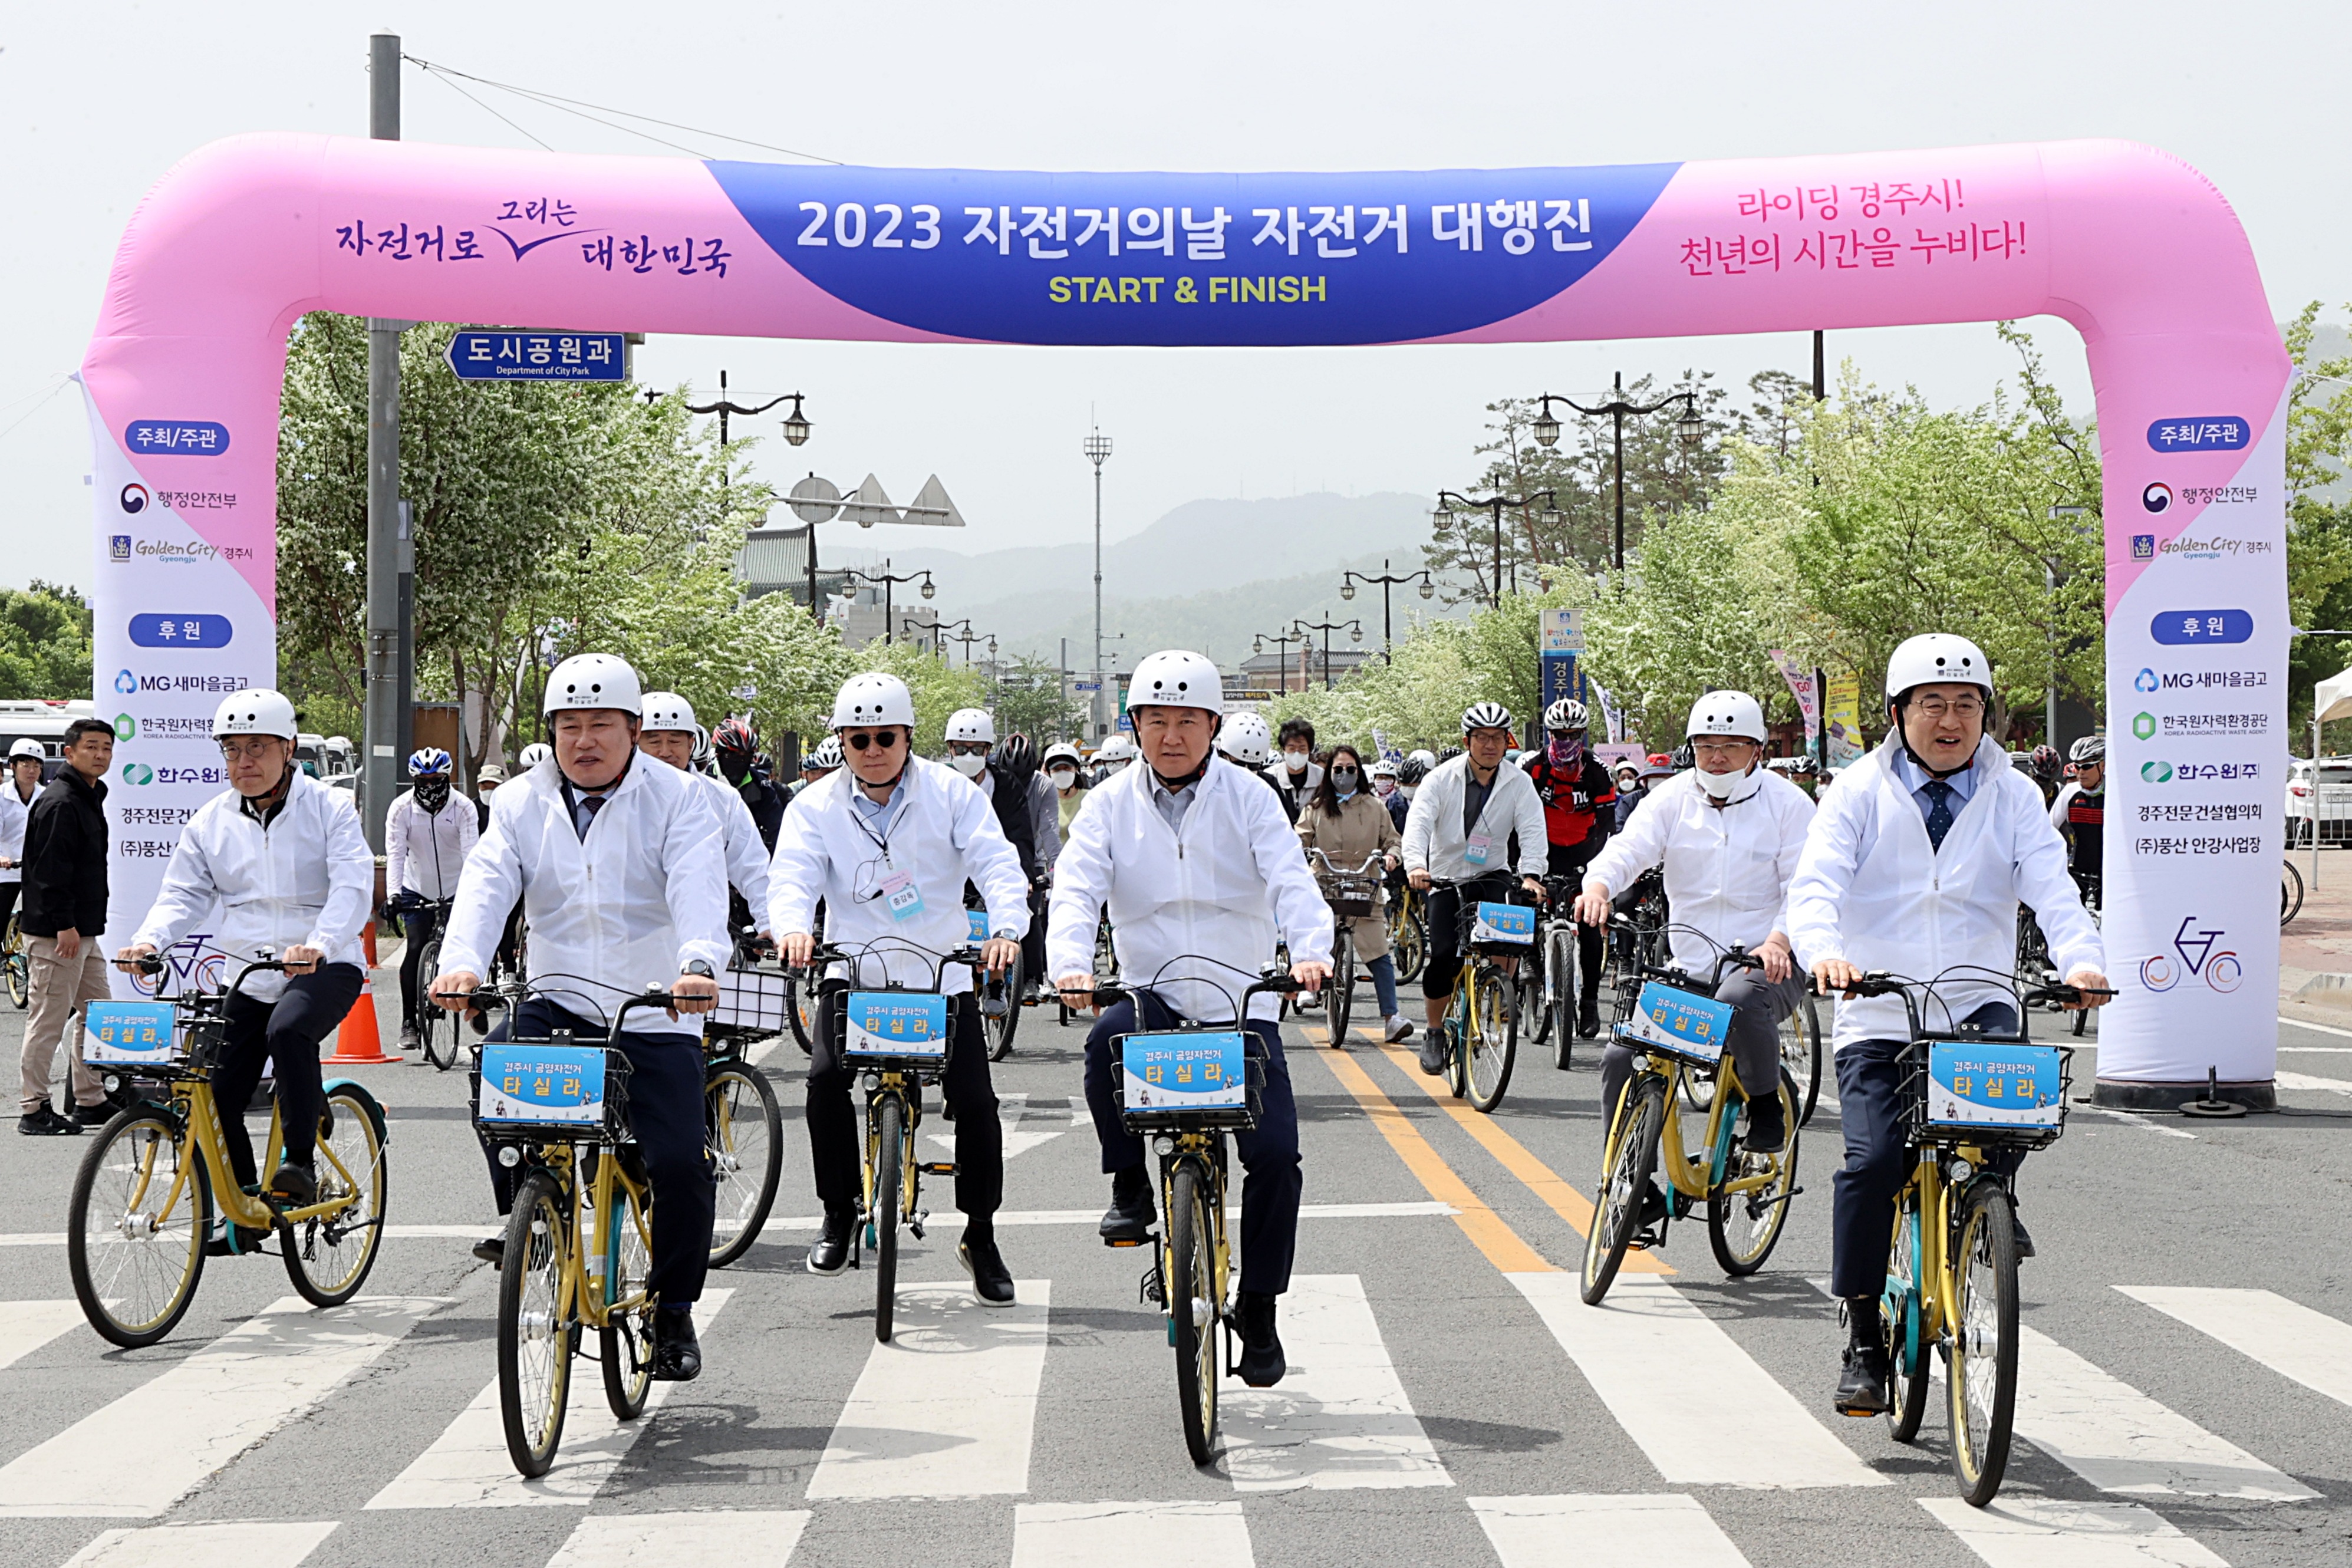 한창섭 행정안전부 차관과 시민들이 21일 오전 경북 경주시 황성공원에서 열린 2023 자전거의 날 행사에서 자전거 대행진 라이딩을 시작하고 있다.